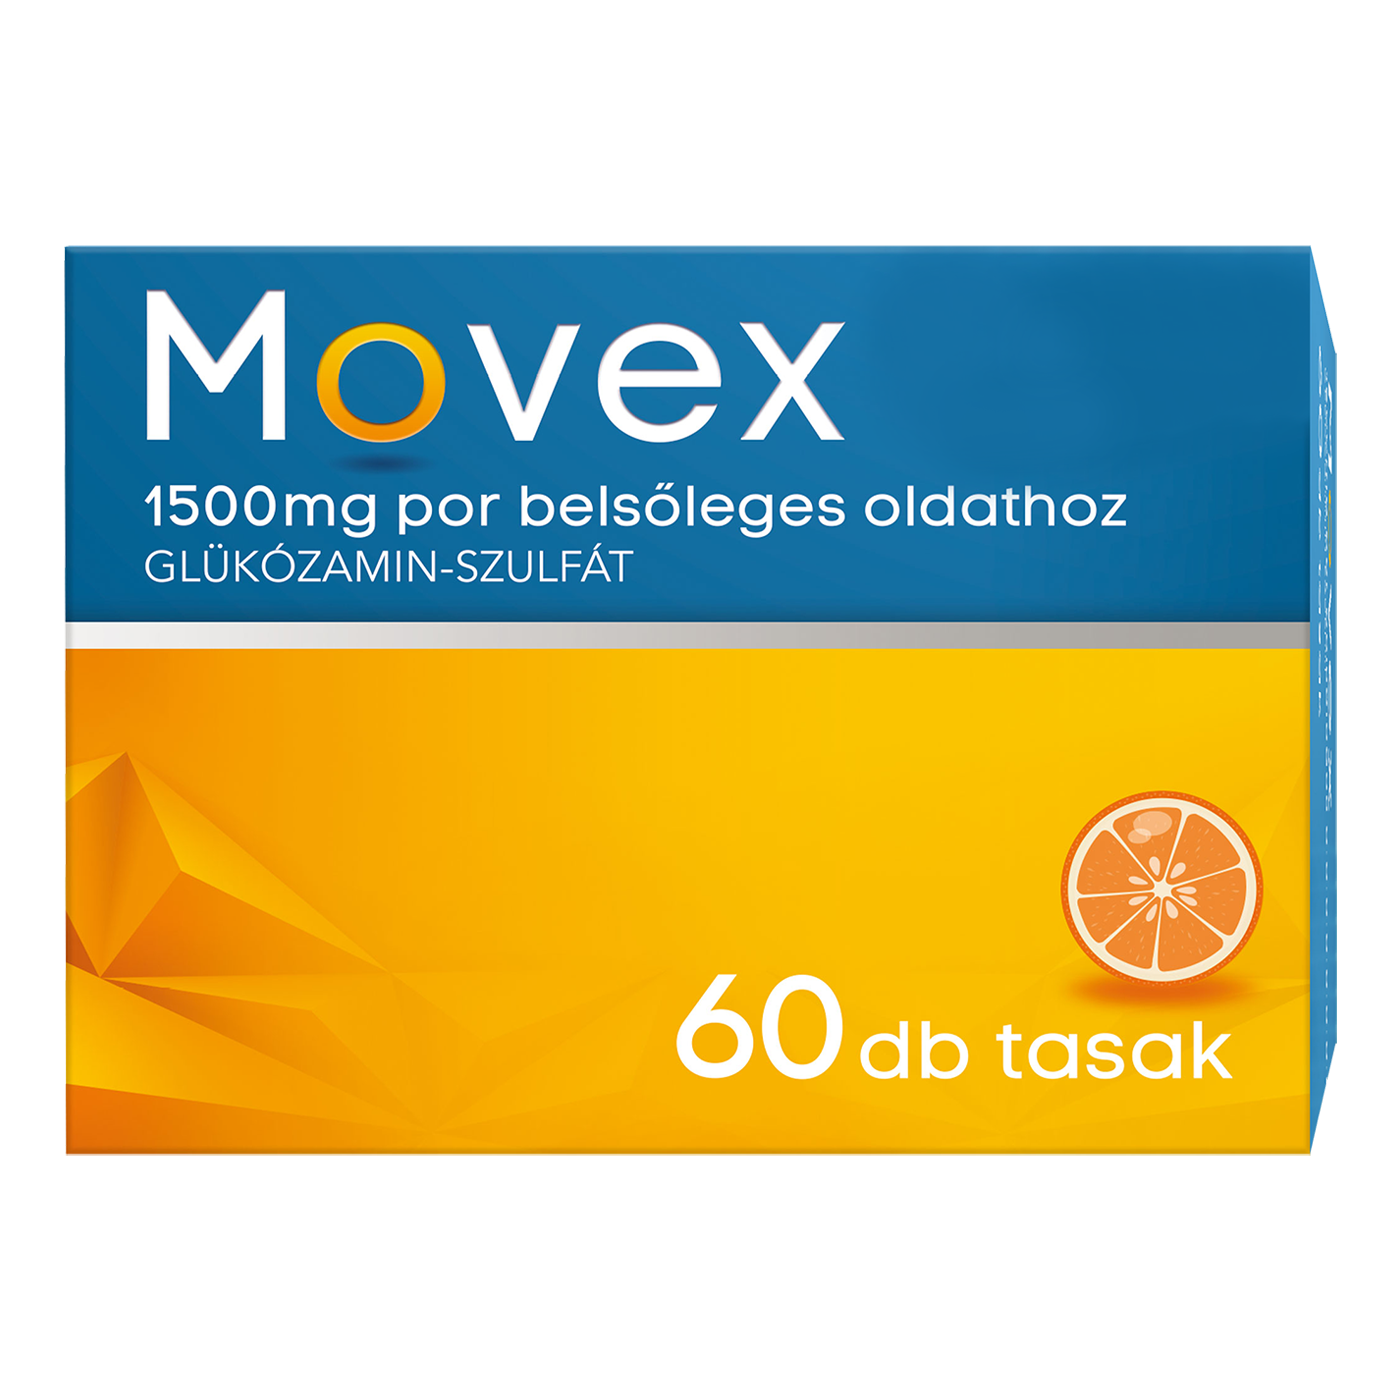 Movex 1500 mg belsőleges oldathoz por, 60 db